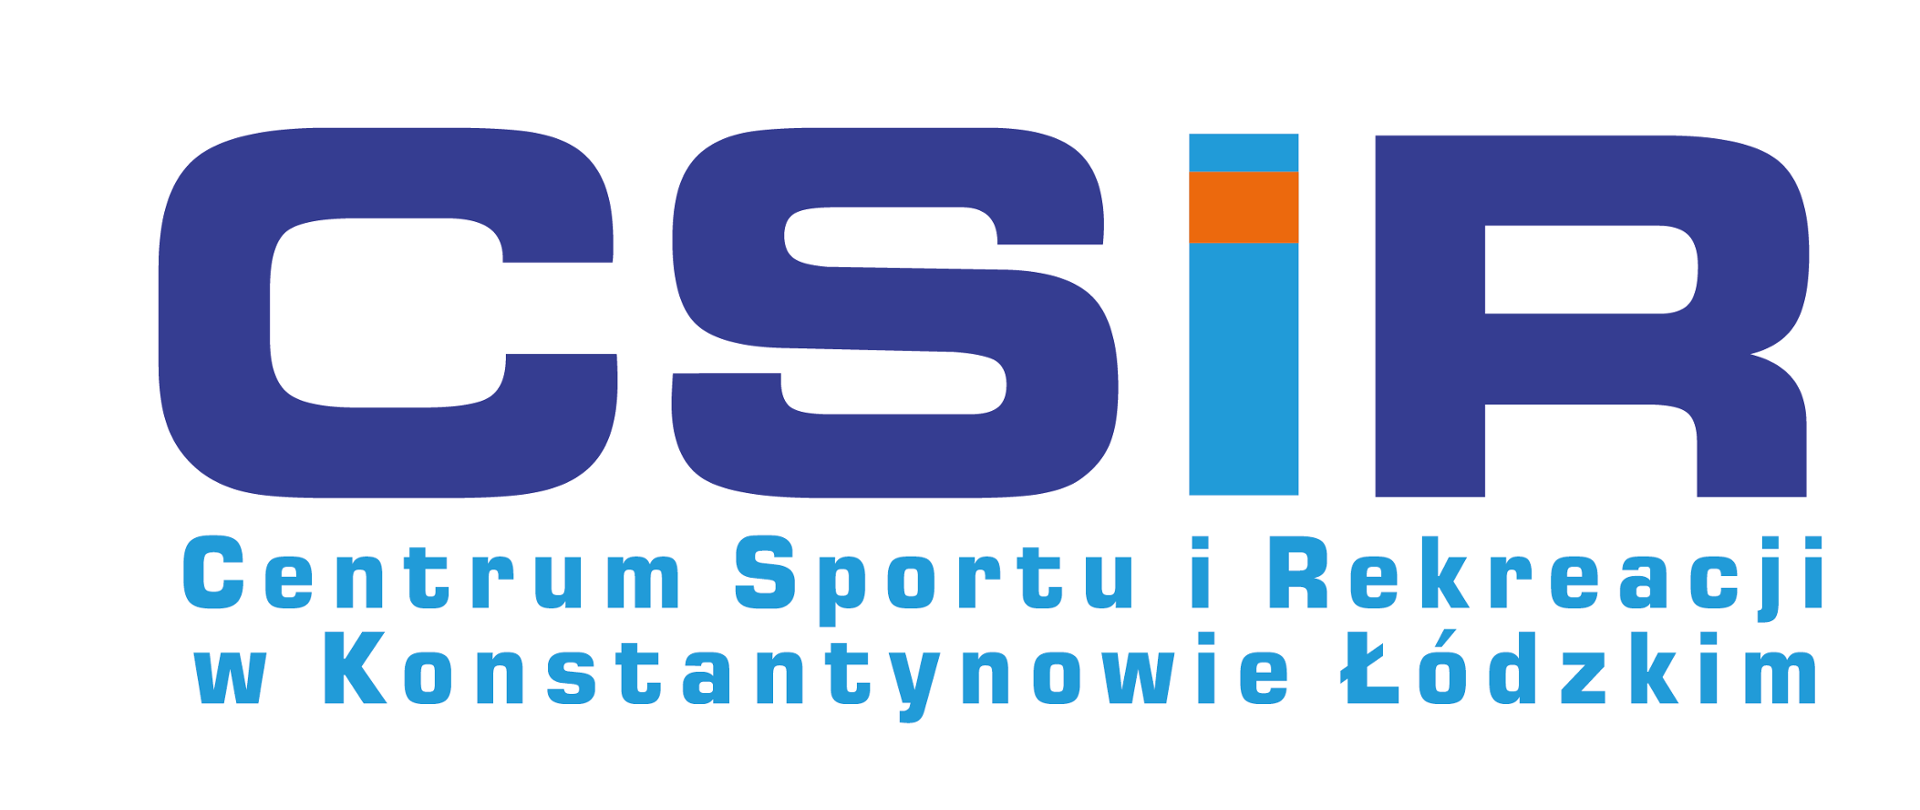 Zdjęcie przedstawia logo Centrum Sportu i Rekreacji w Konstantynowie Łódzkim. Na górze znajduje się grafika płynącej osoby, a poniżej jest napis: "CSiR Centrum Sportu i Rekreacji w Konstantynowie Łódzkim".